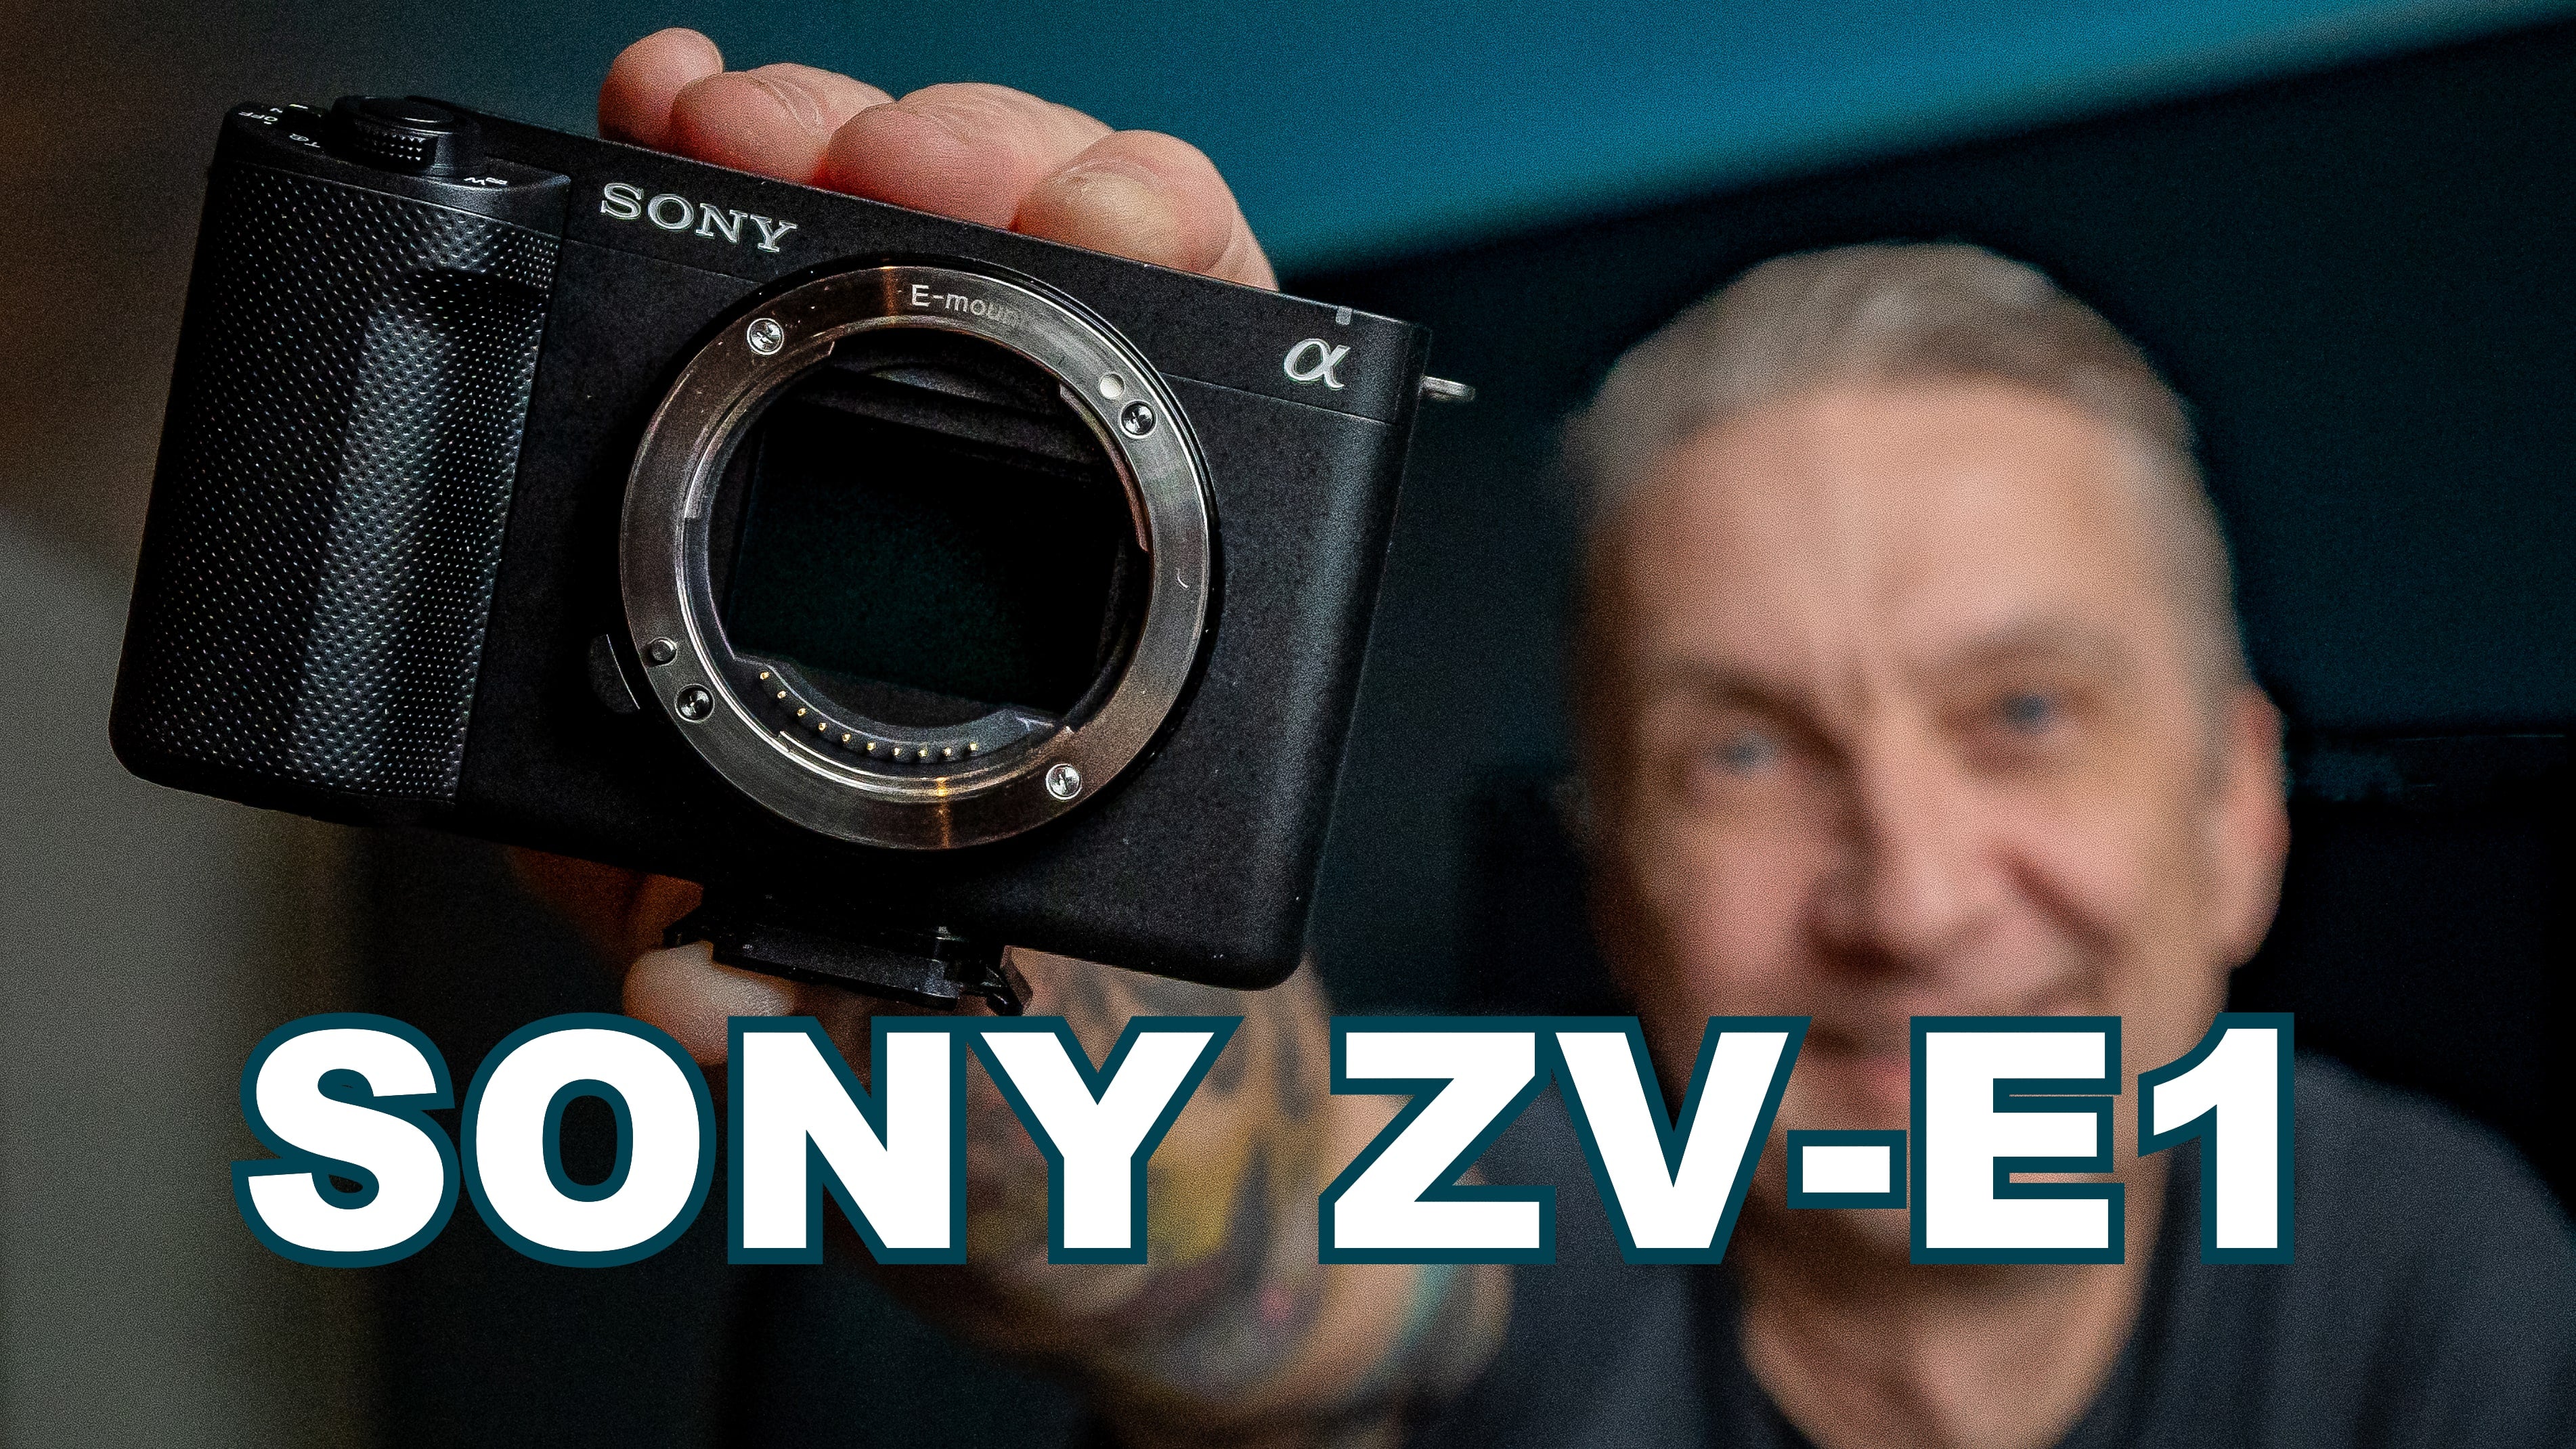 Ladda video: Sony ZV-E1 är en fullformatskamera med en grym uppsättning kreativa funktioner för filmskapare, content creators och vloggare. Den kameran handlar det om i den här videon.